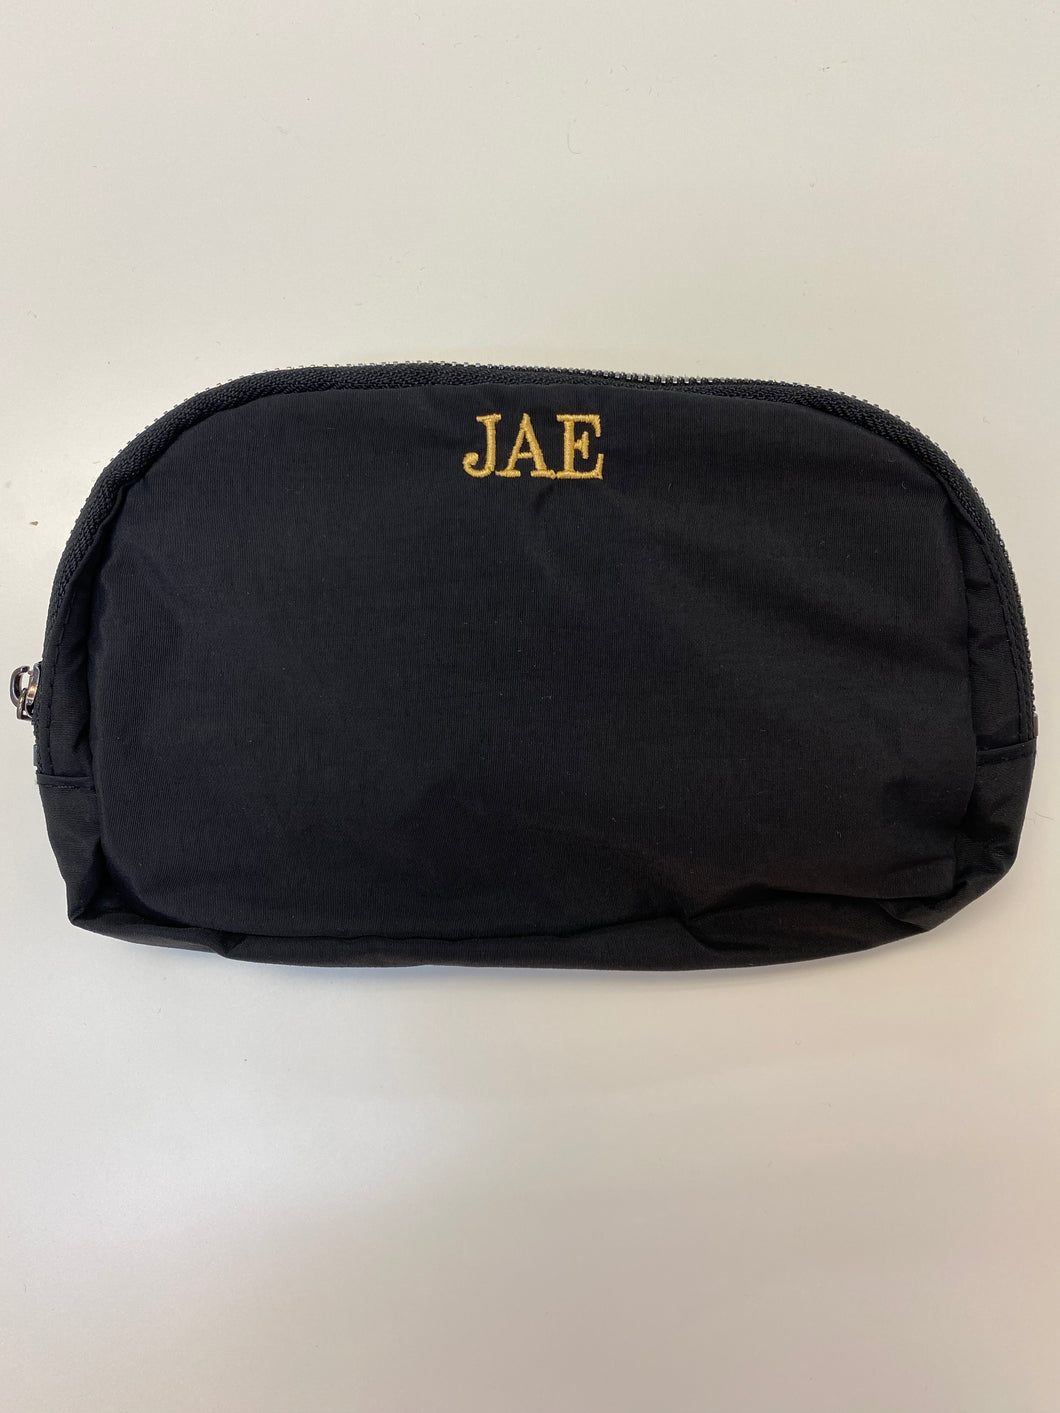 JAE Belt Bag- No Flaws